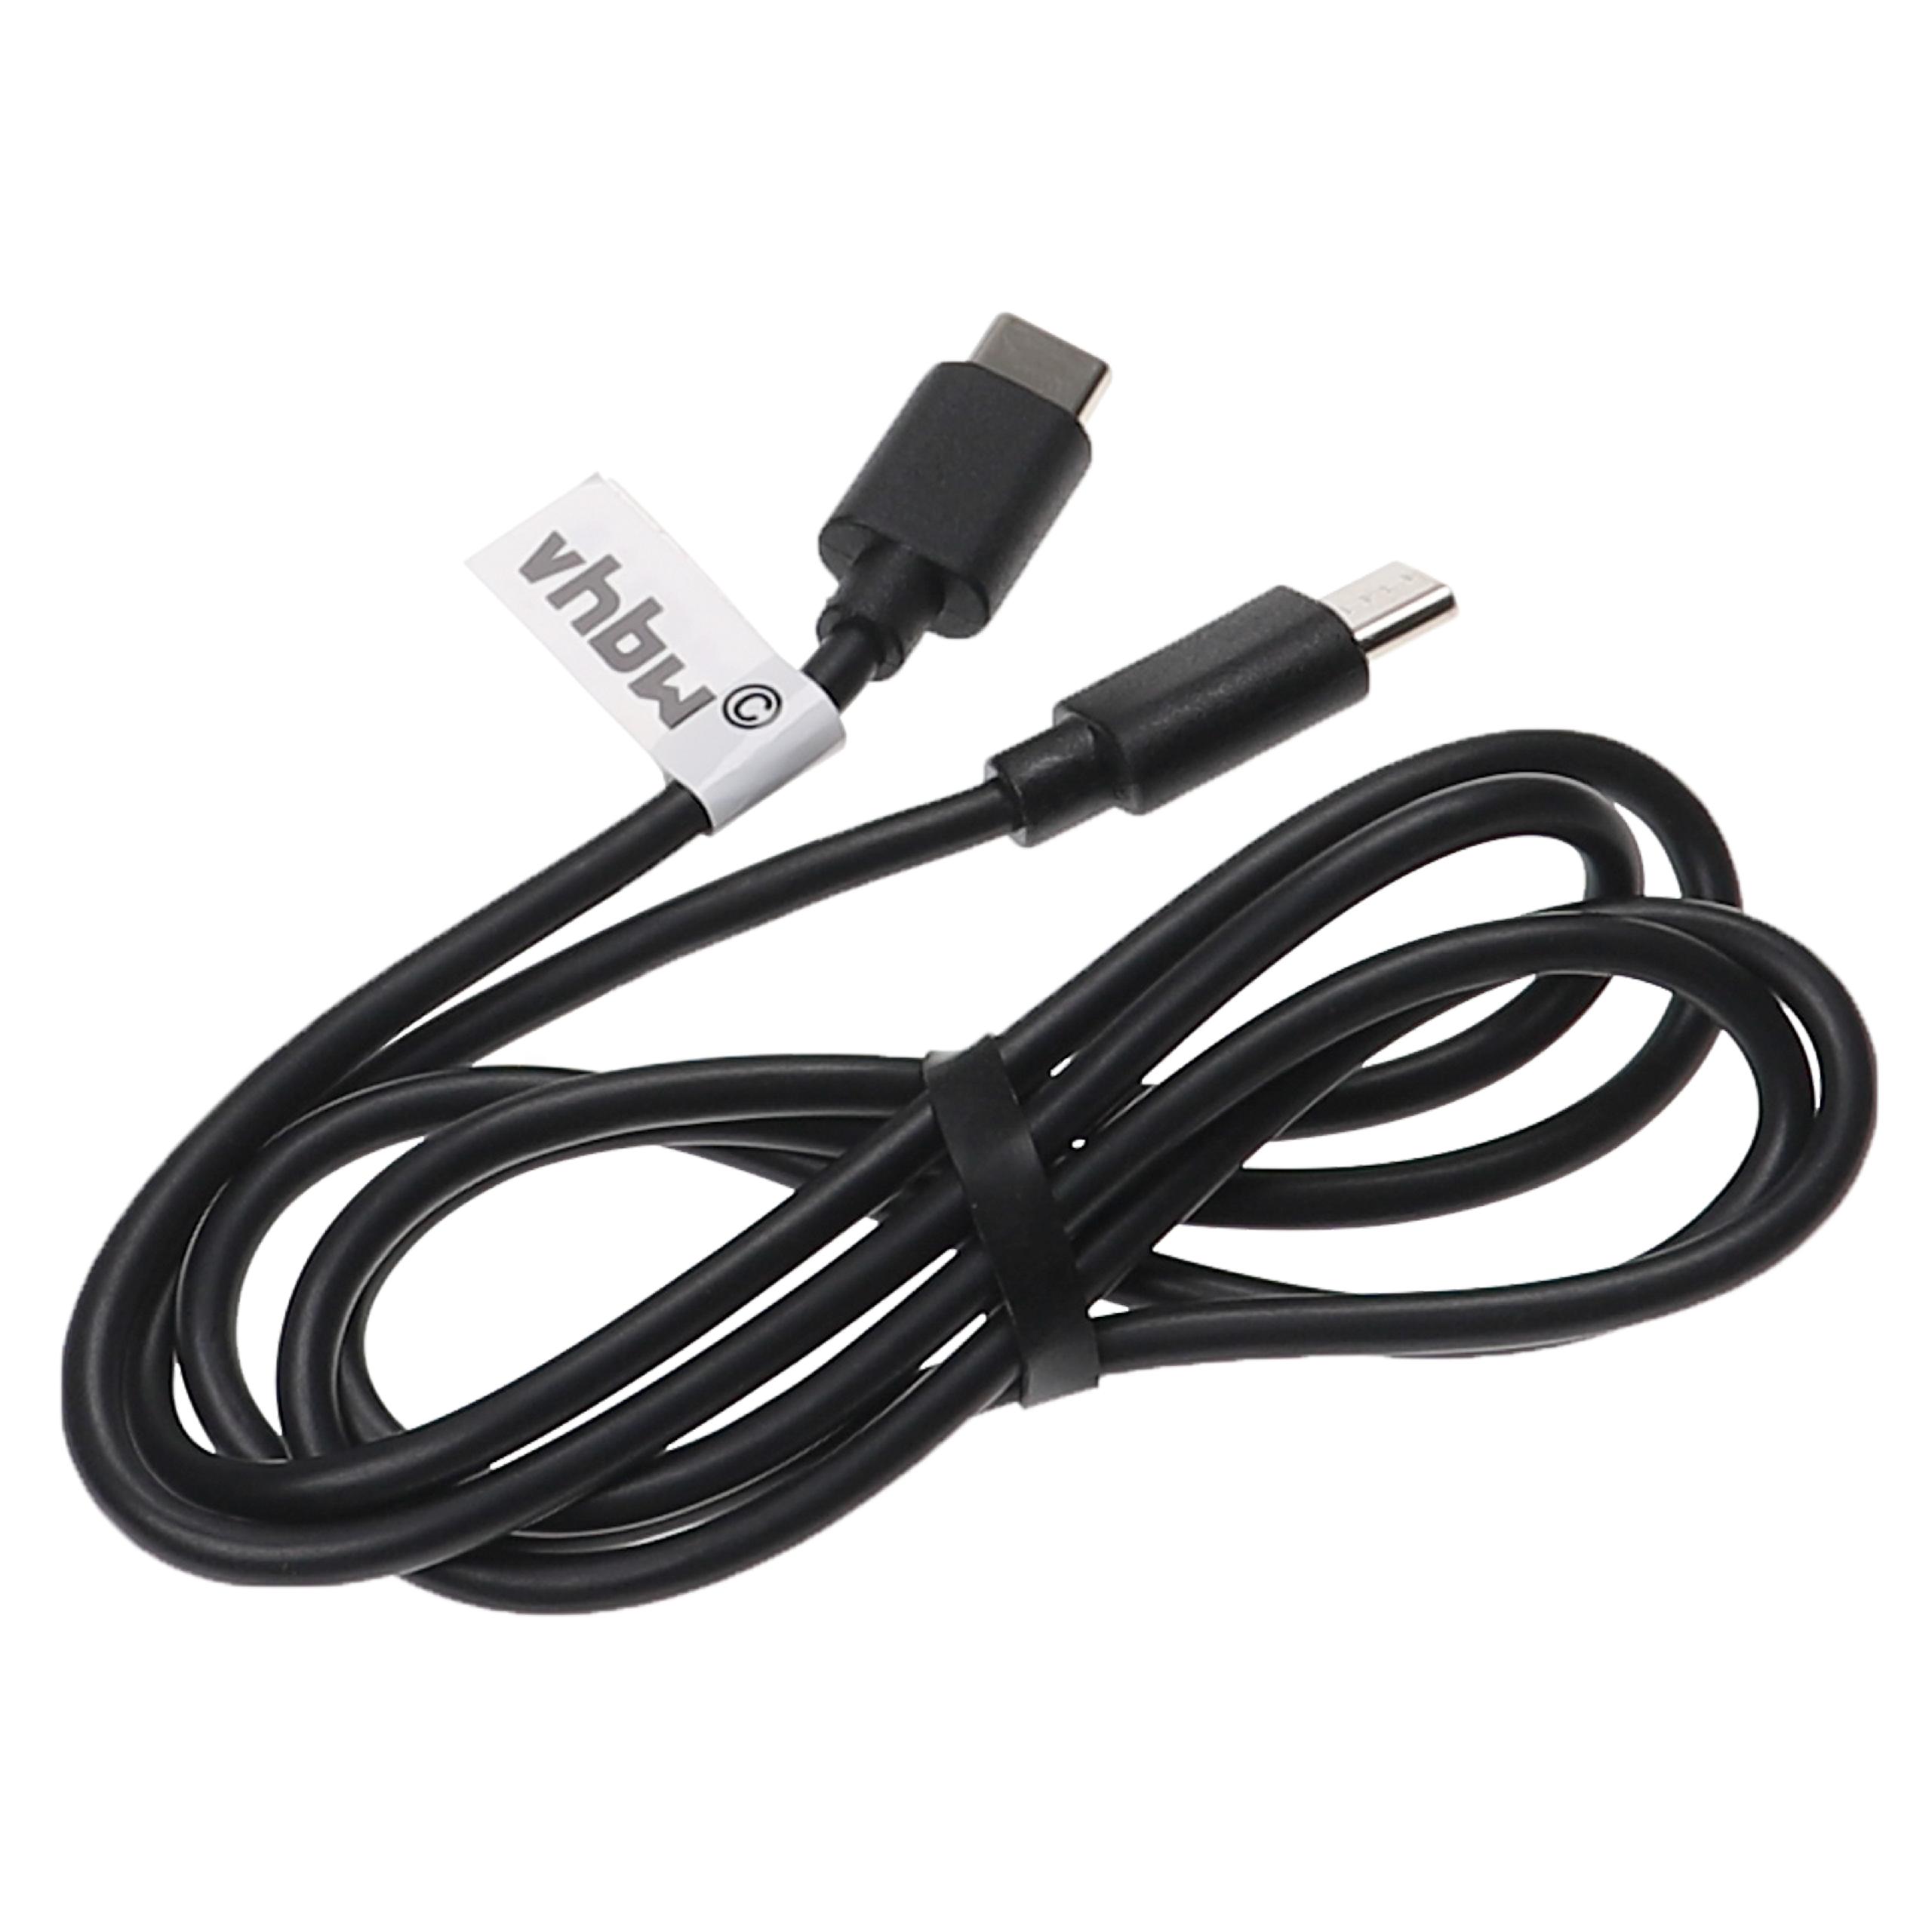 Cable de carga USB C para diversos portátiles, tablets, smartphones - 1 m, negro